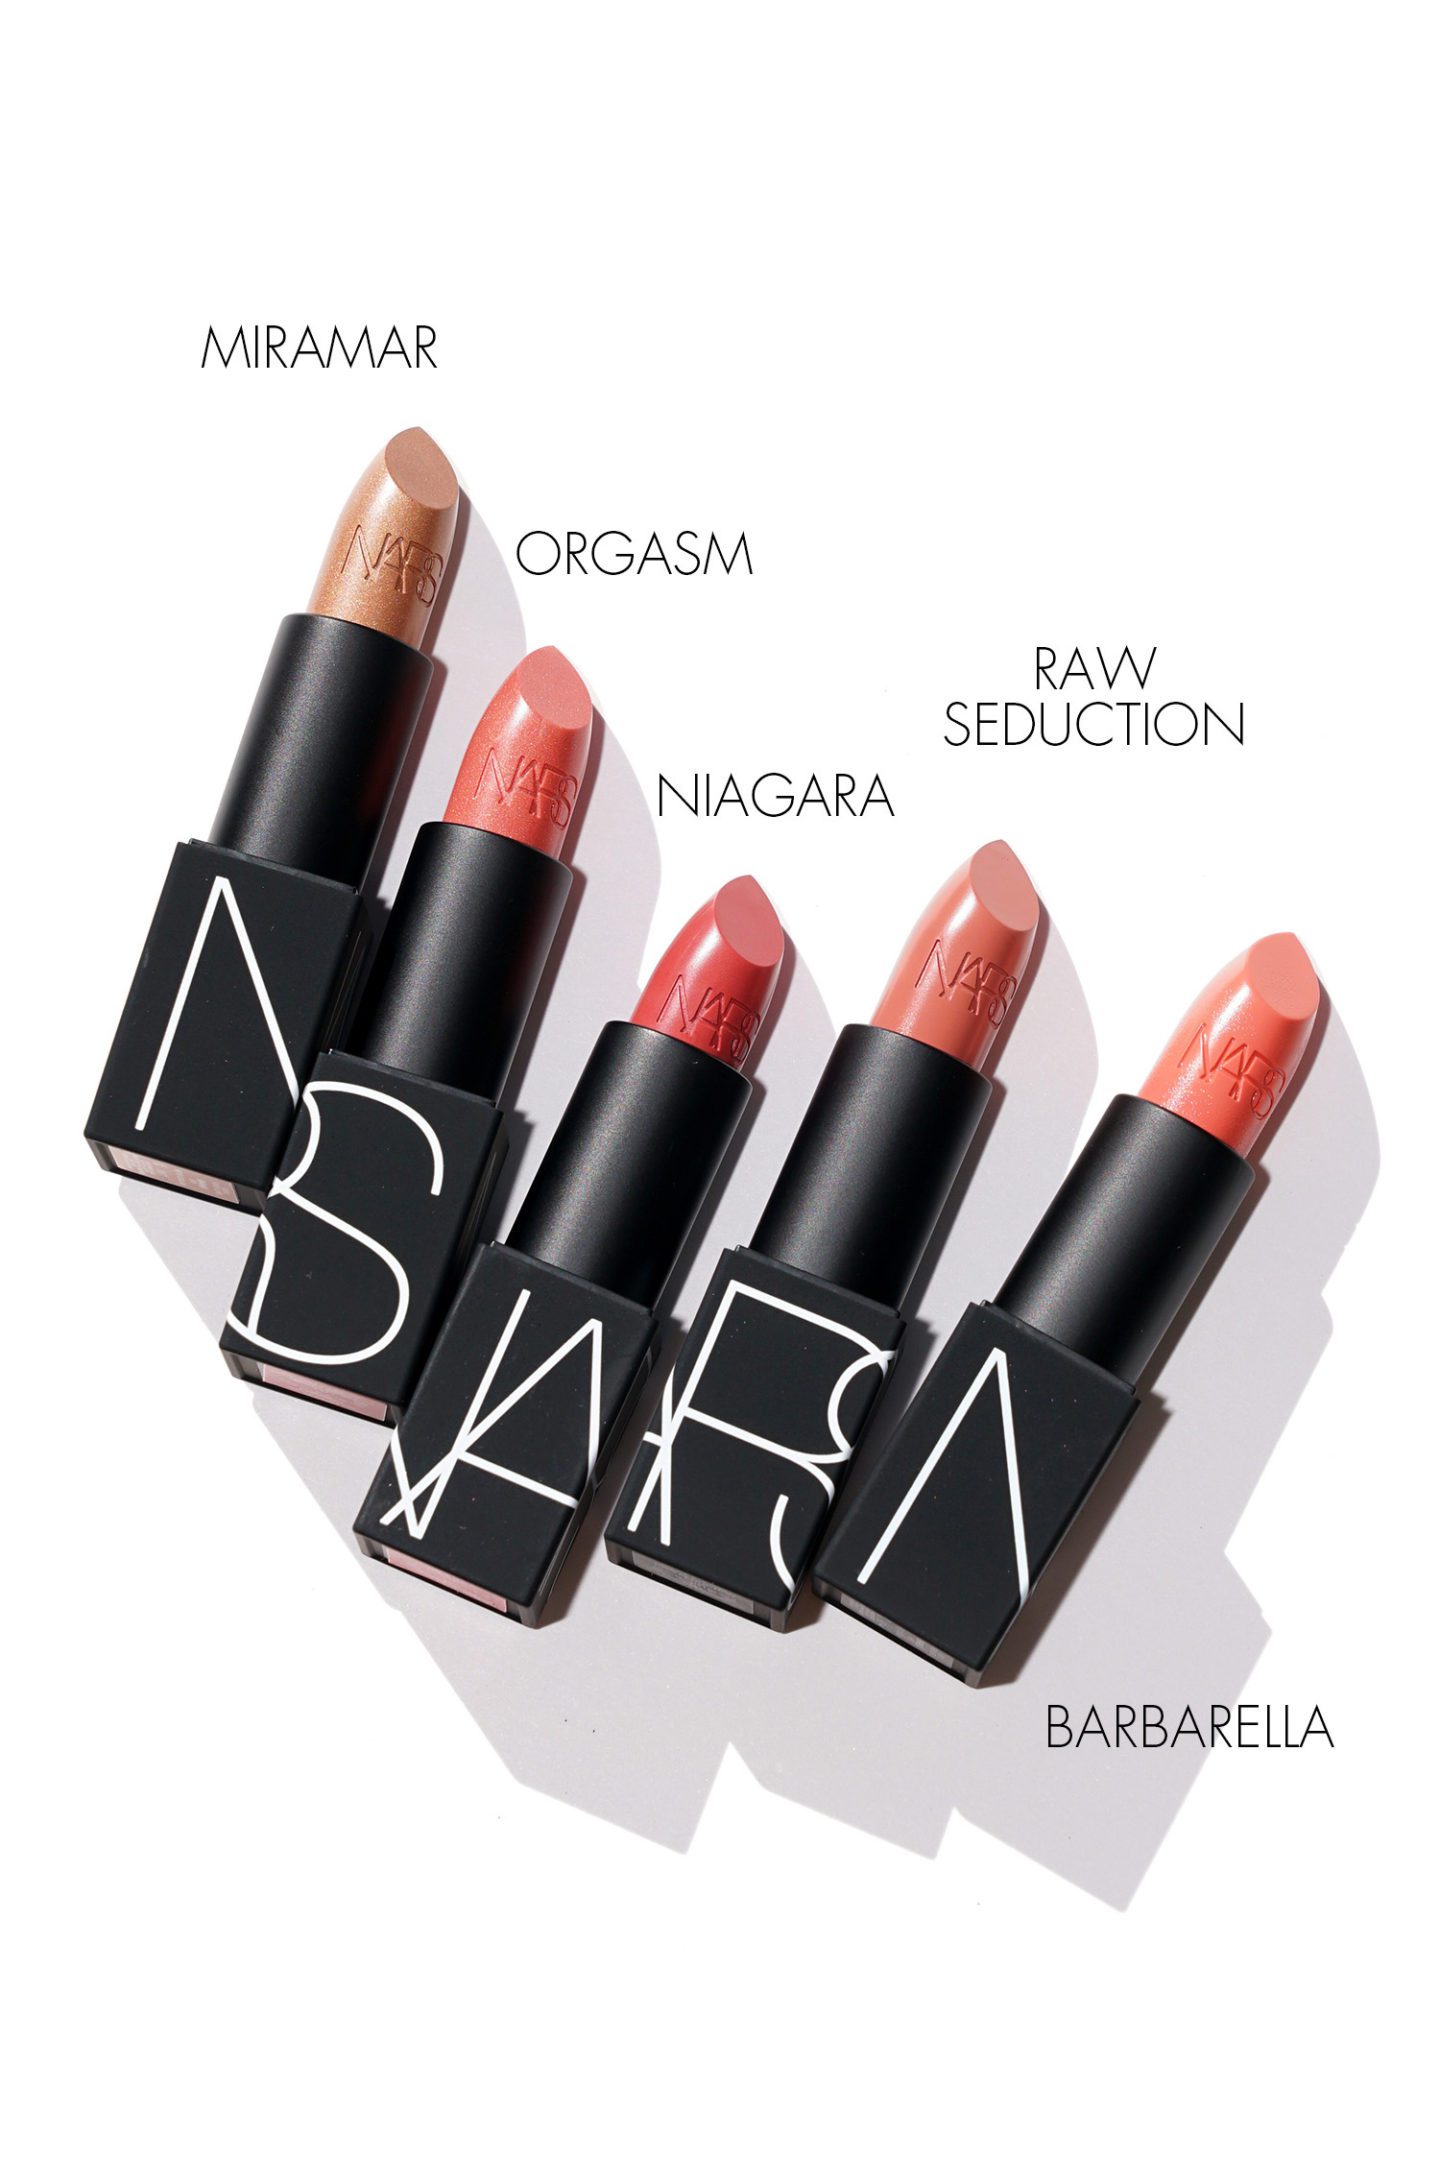 NARS Lipsticks Miramar, Orgasm, Niagara, Raw Seduction, Barbarella